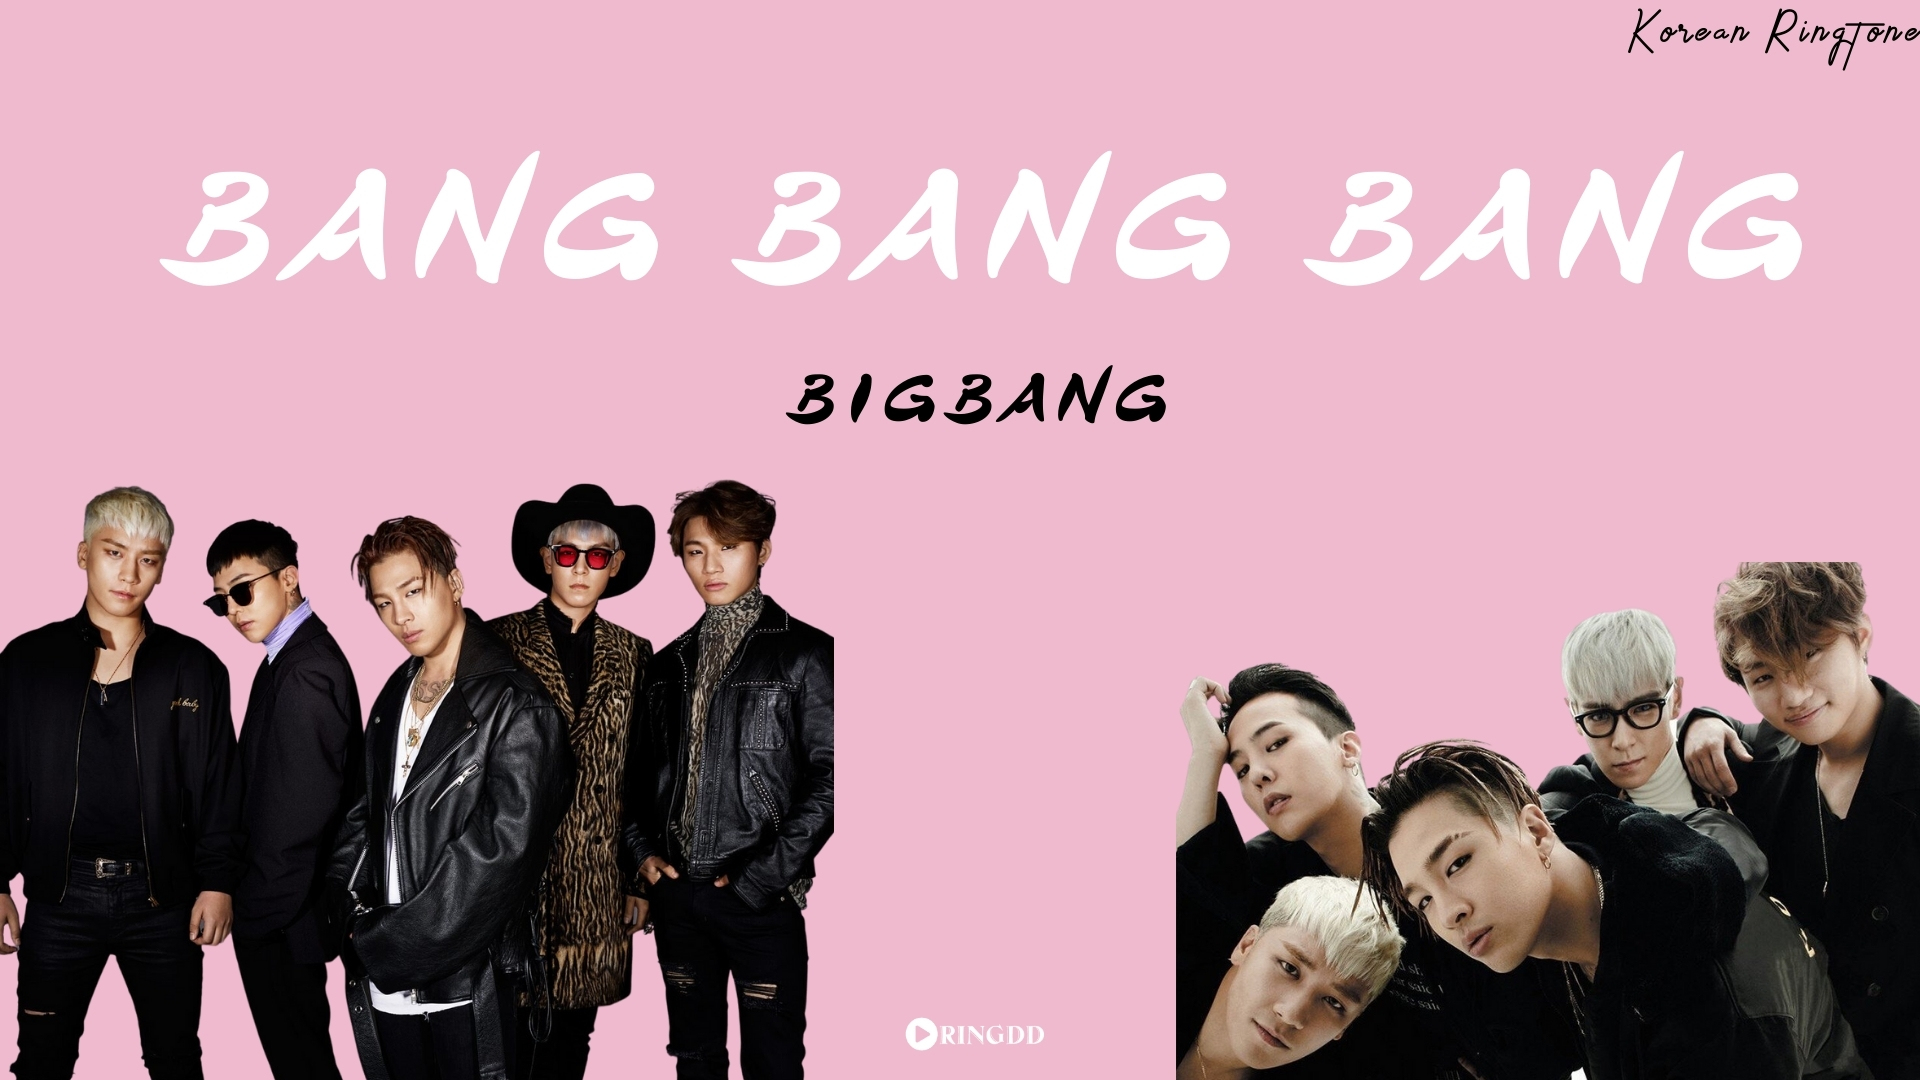 Bang bang bang born рингтон. Bang. Чёрная футболка с Bang Bang big Bang. Чёрная футболка с надписью Bang Bang big Bang.